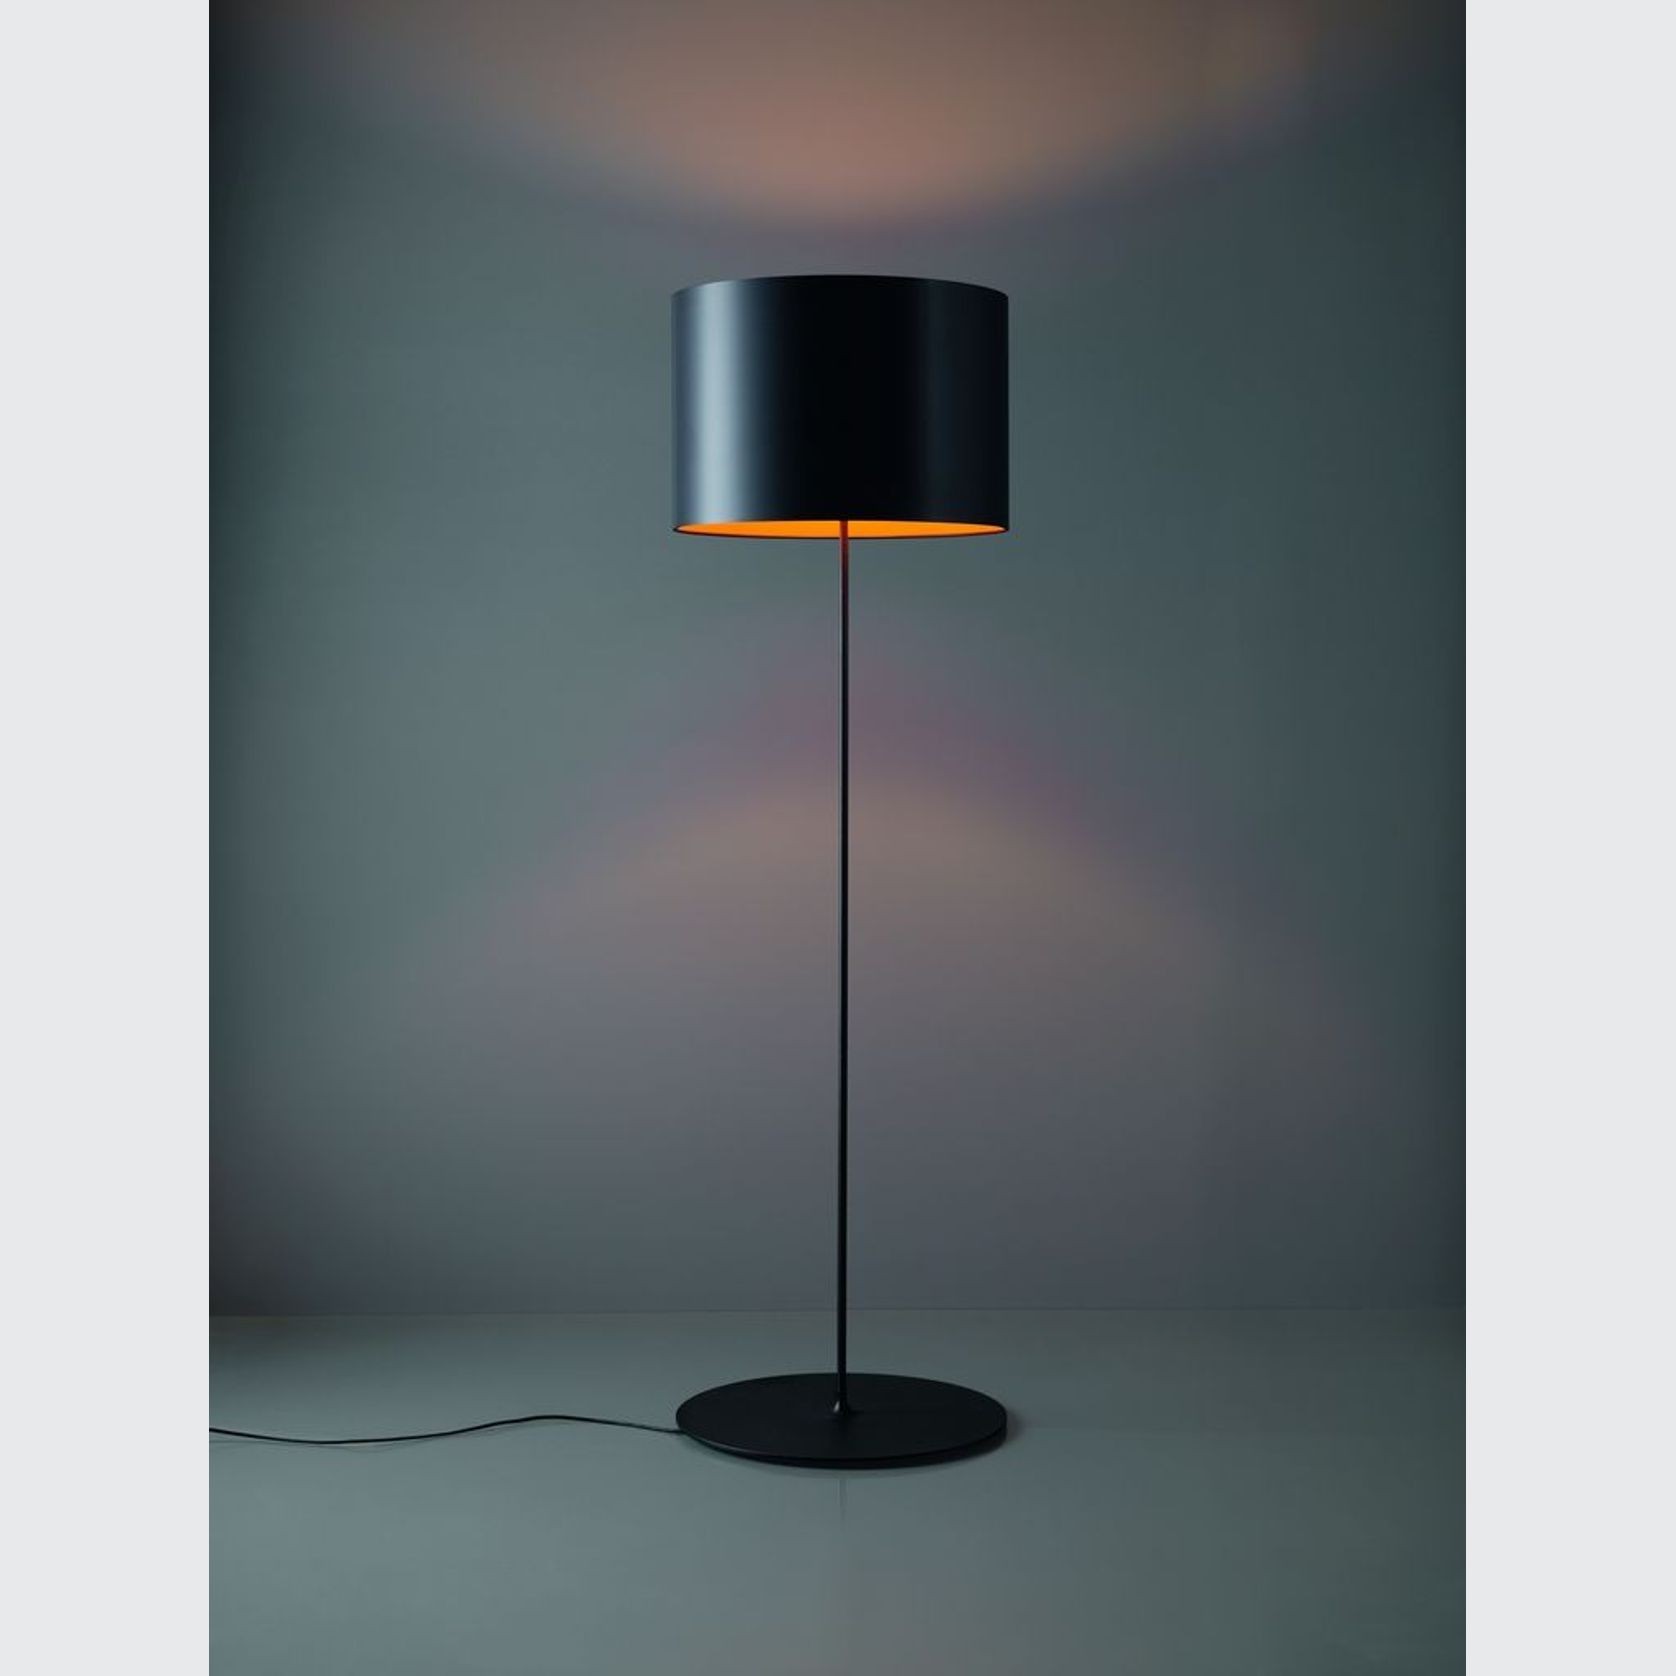 Half Moon Floor Lamp by Karboxx gallery detail image